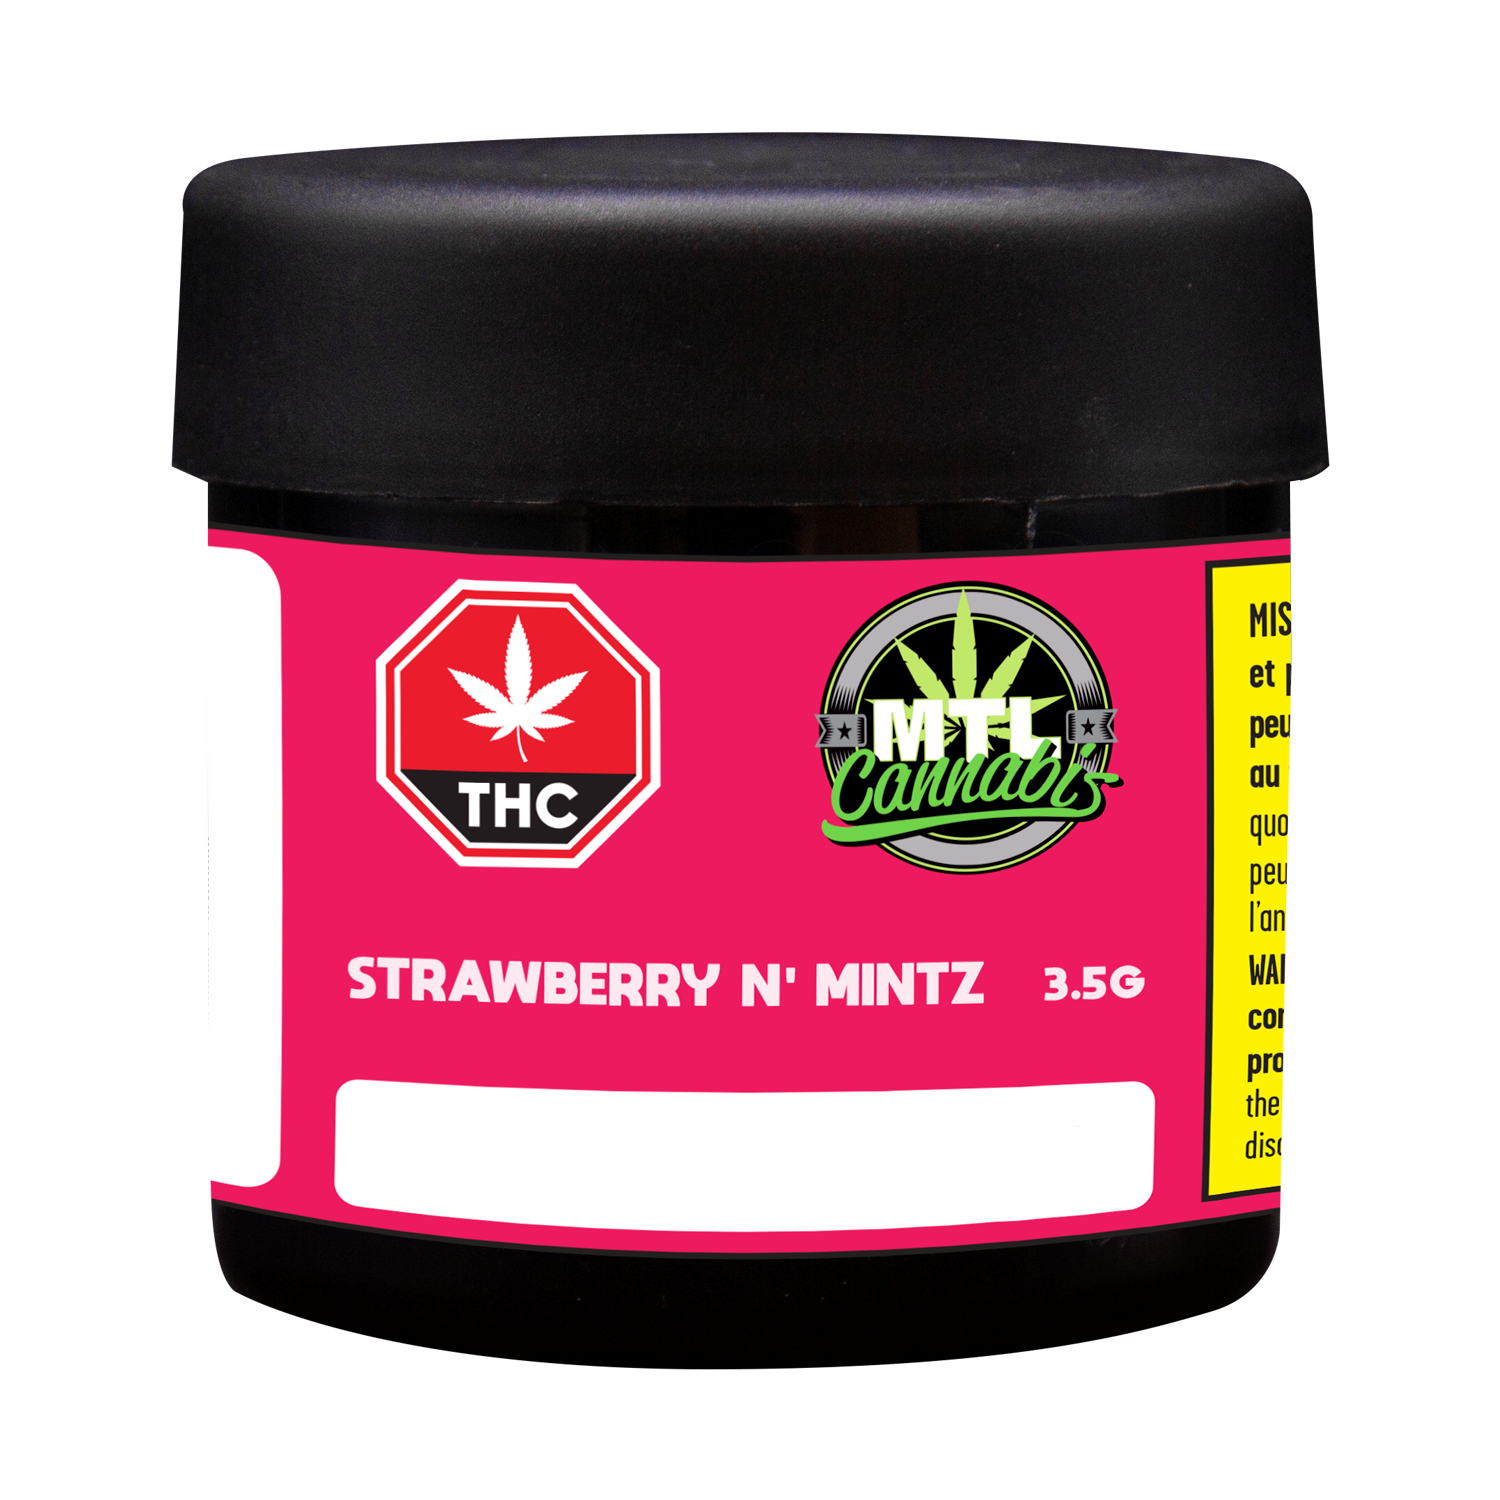 Strawberry N' Mintz